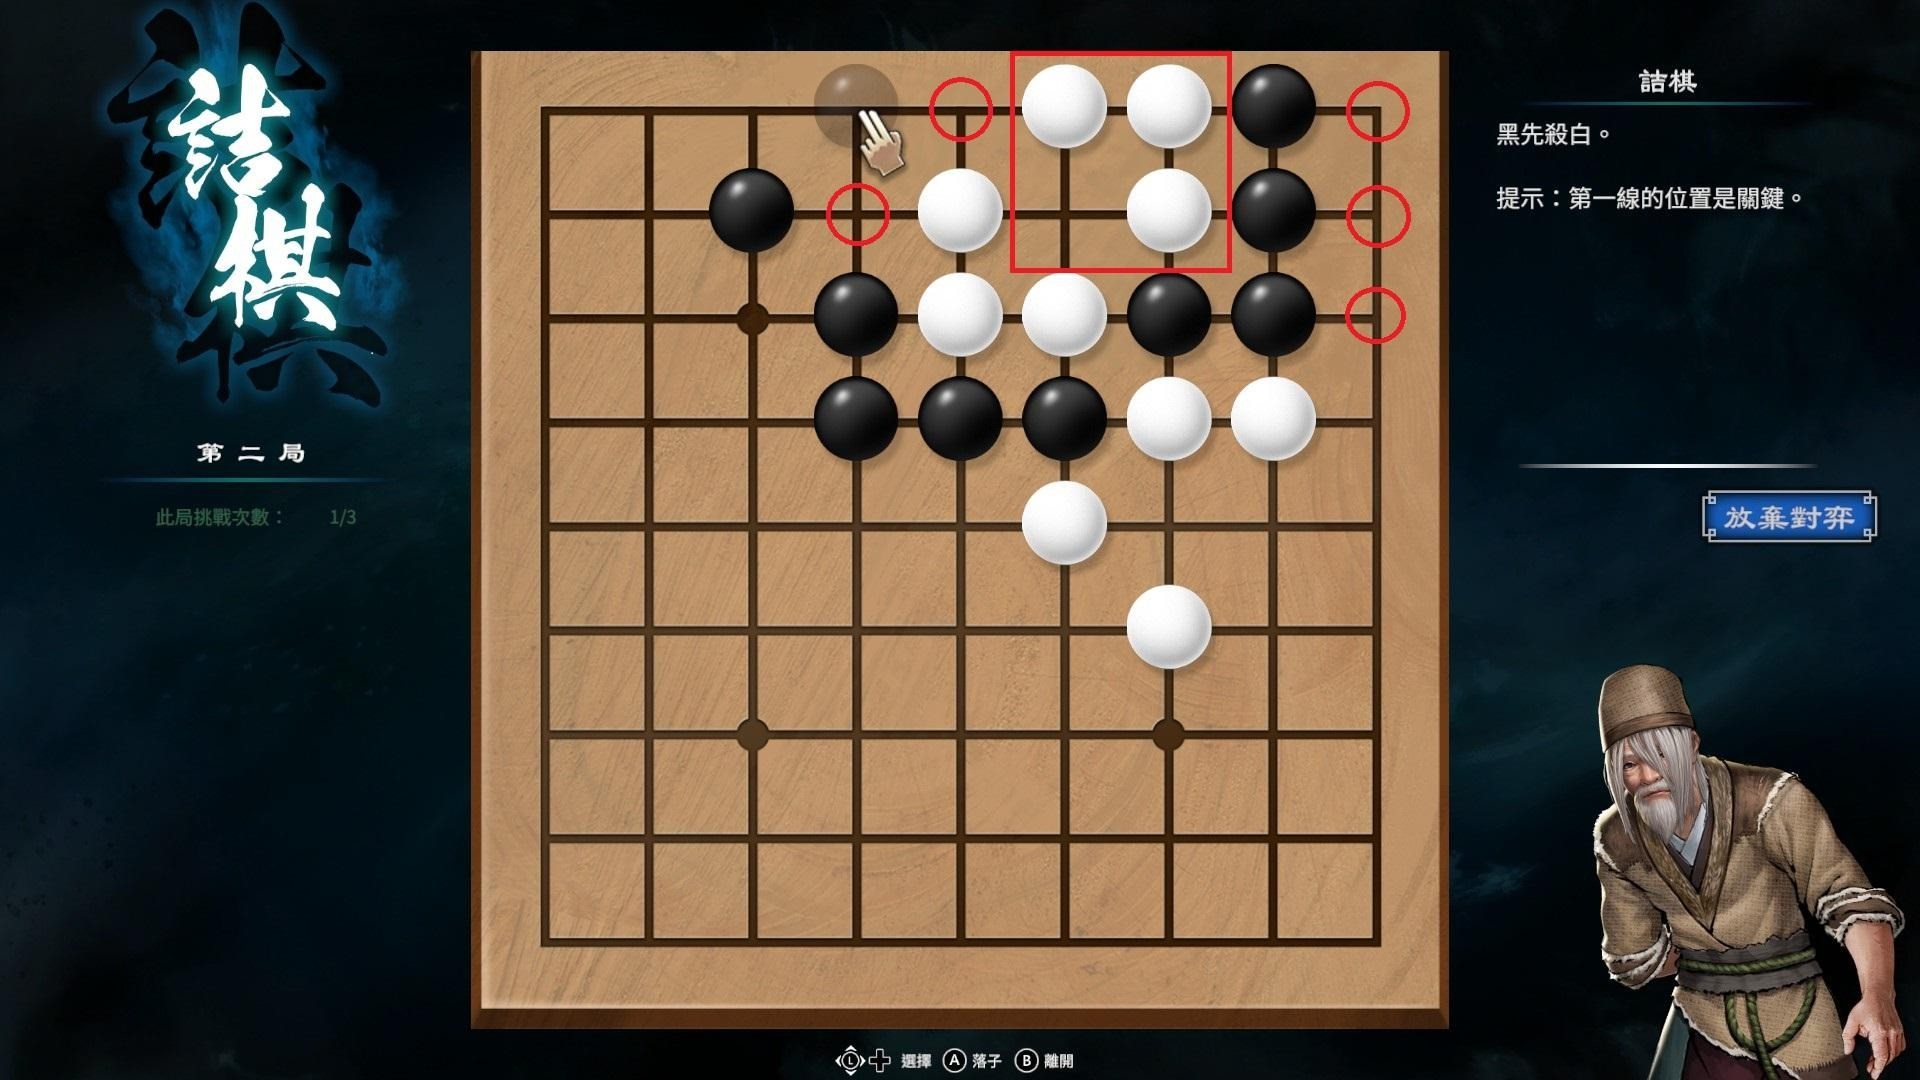 《天命奇御2》圍棋基本概念與棋型解法介紹 - 第3張